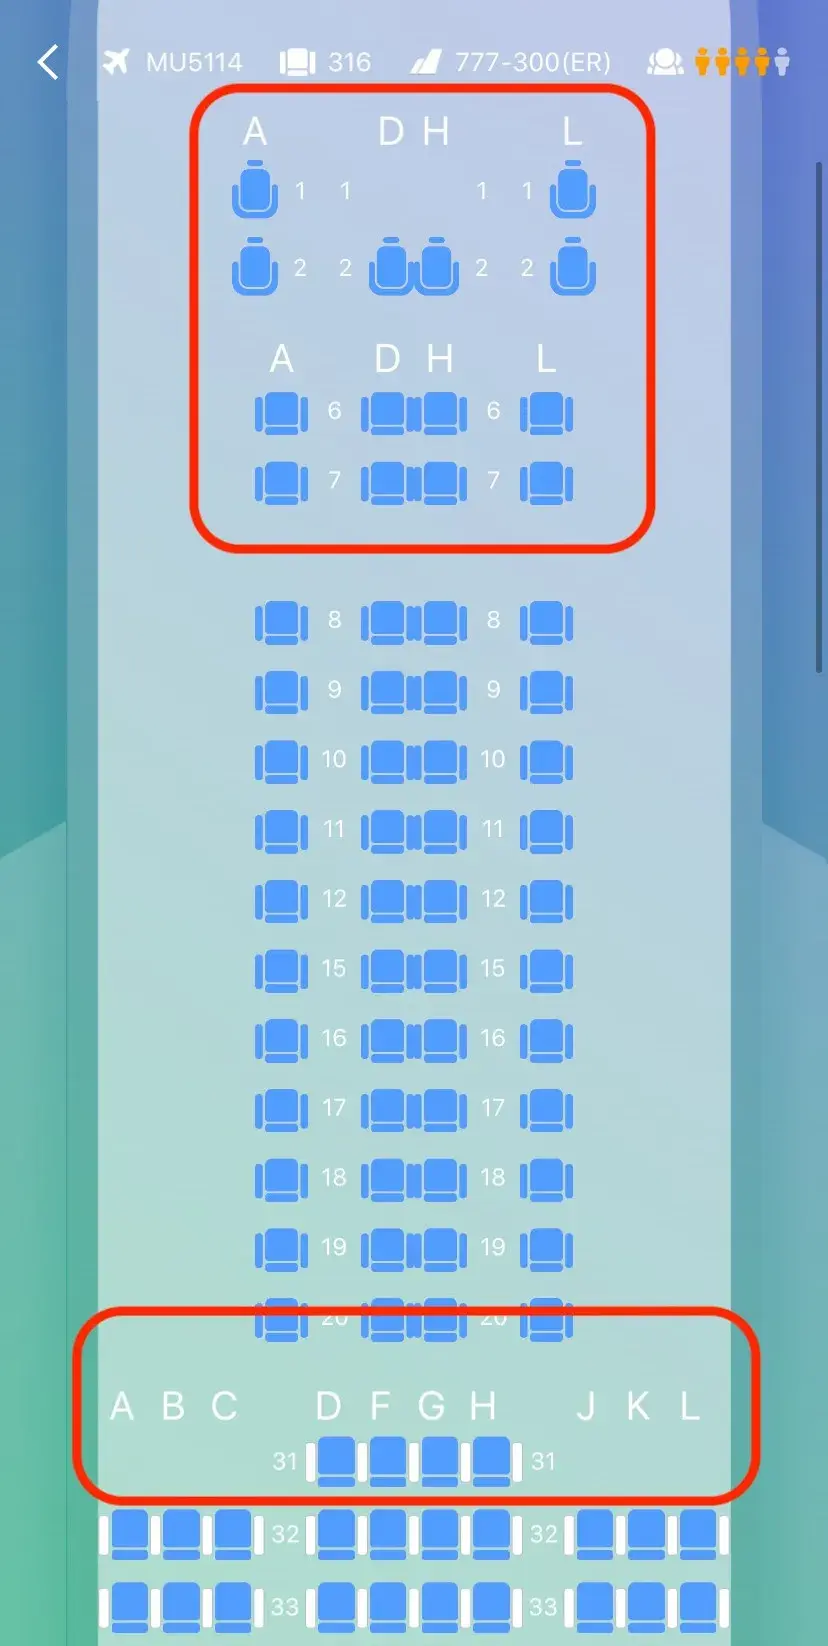 为什么高铁没有e座位?飞机没有i座位?